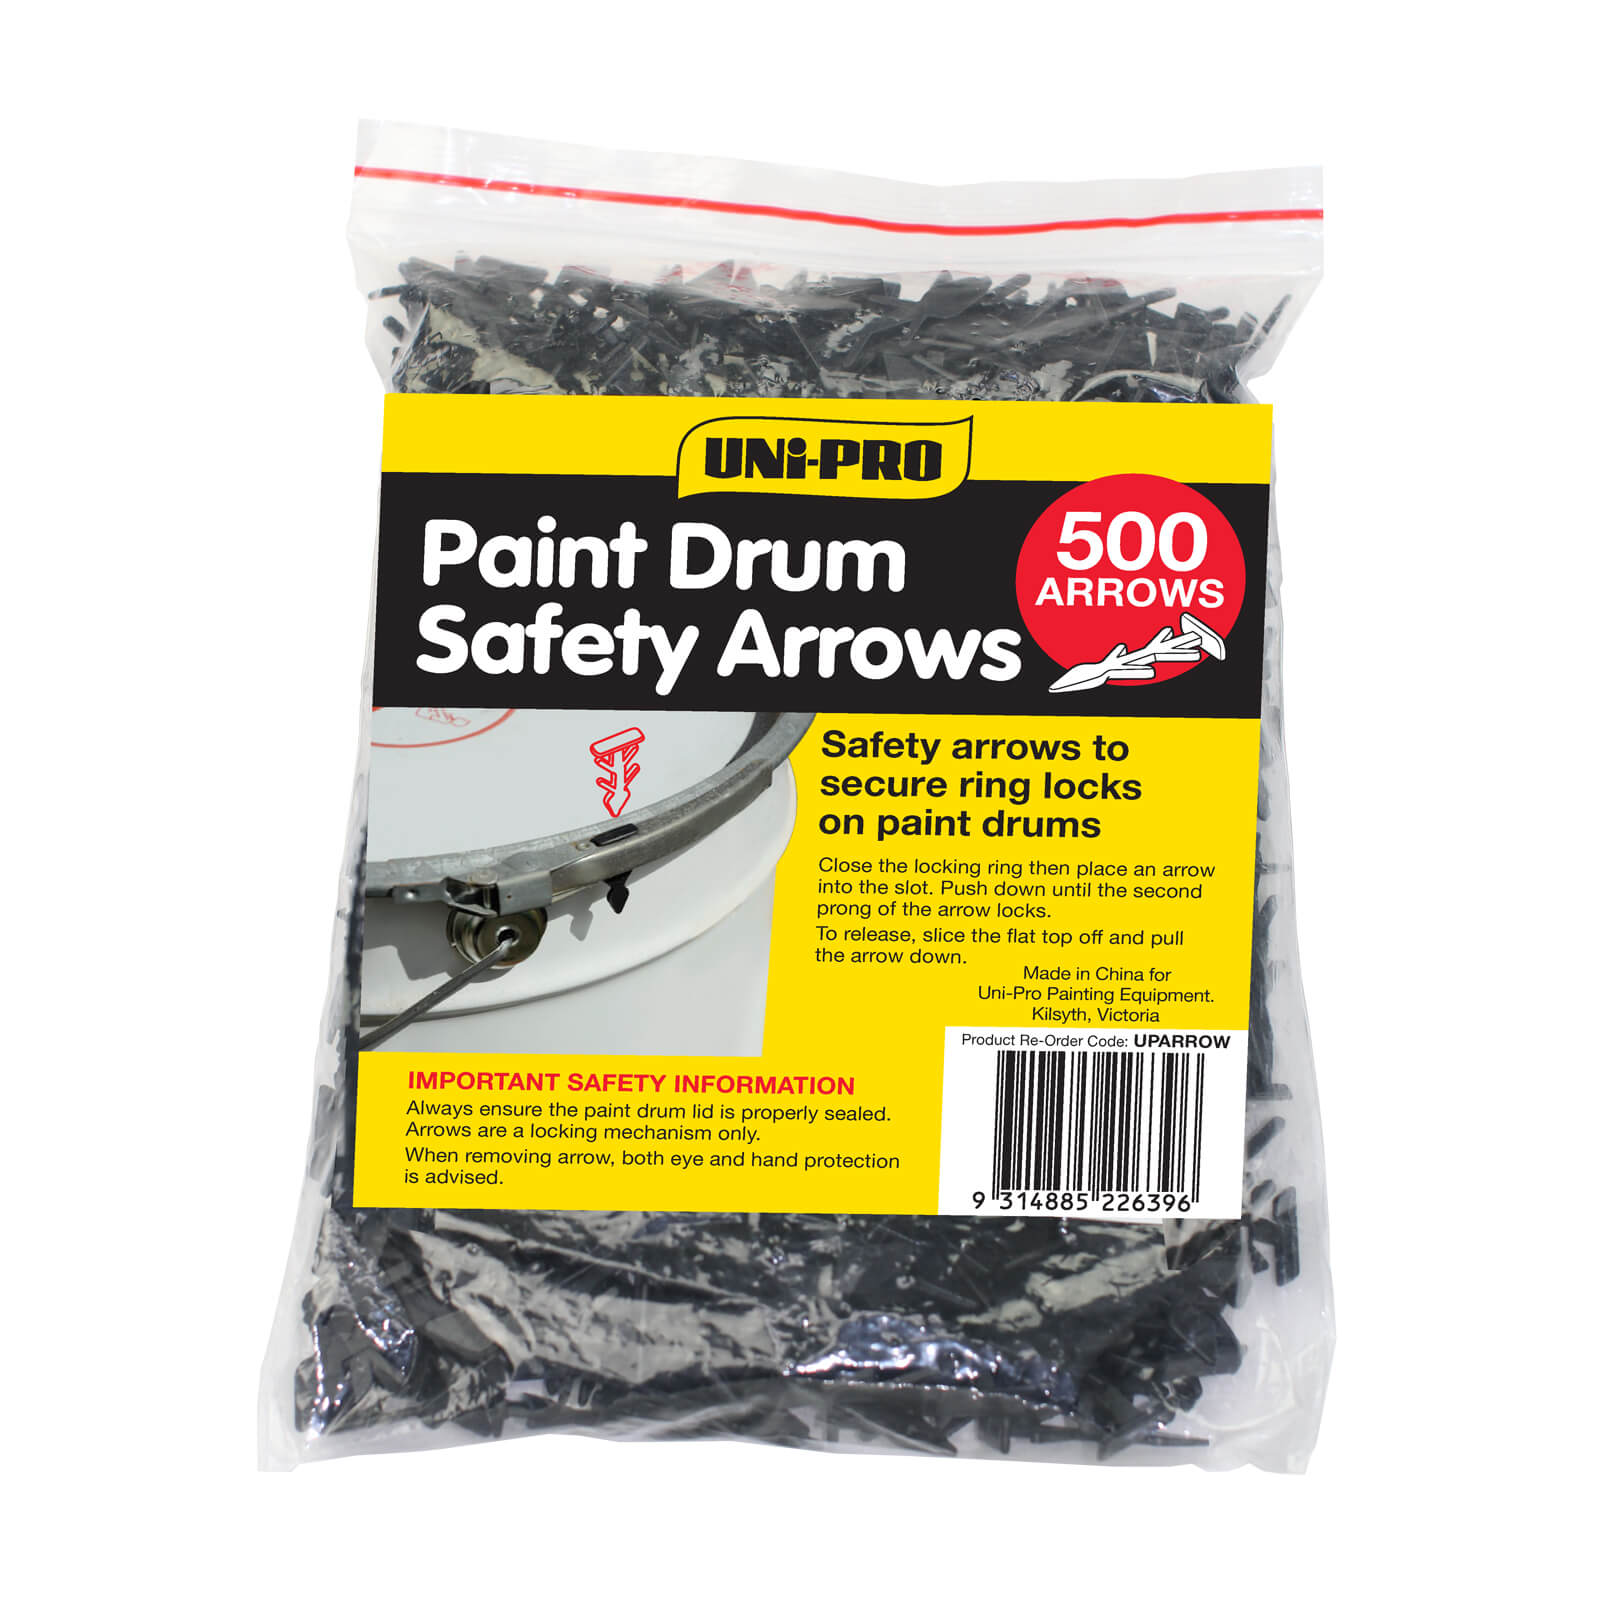 UNi-PRO Paint Drum Safety Arrows